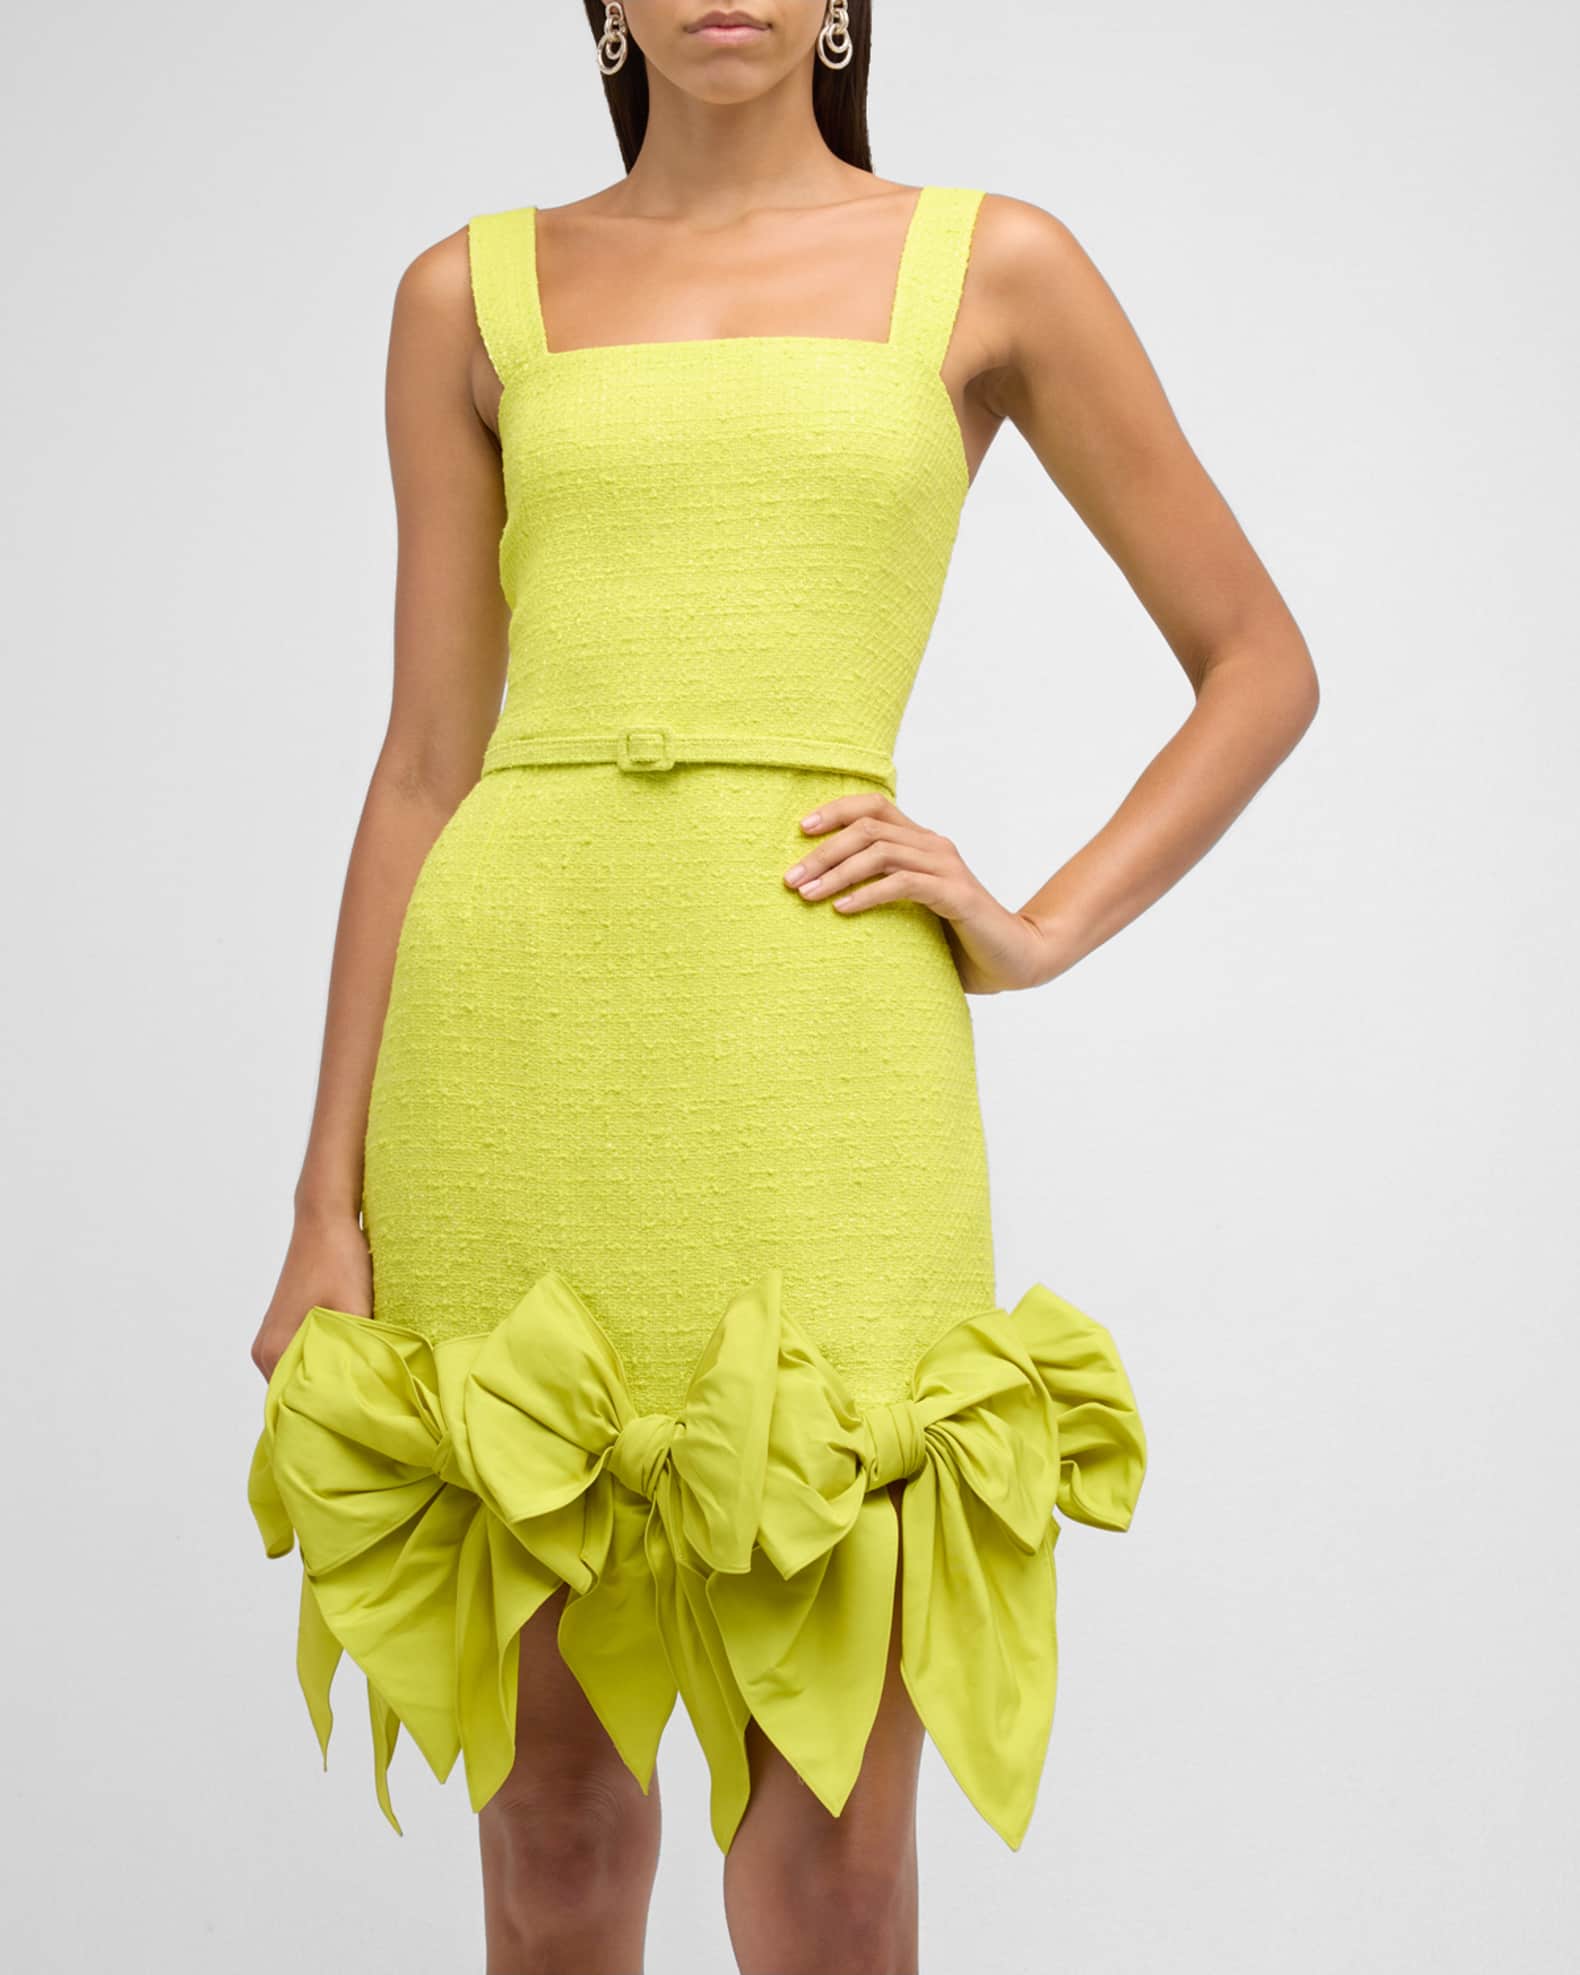 LuLaRoe Nicki Sleeveless Tank Dress Size Small Yellow Plaid